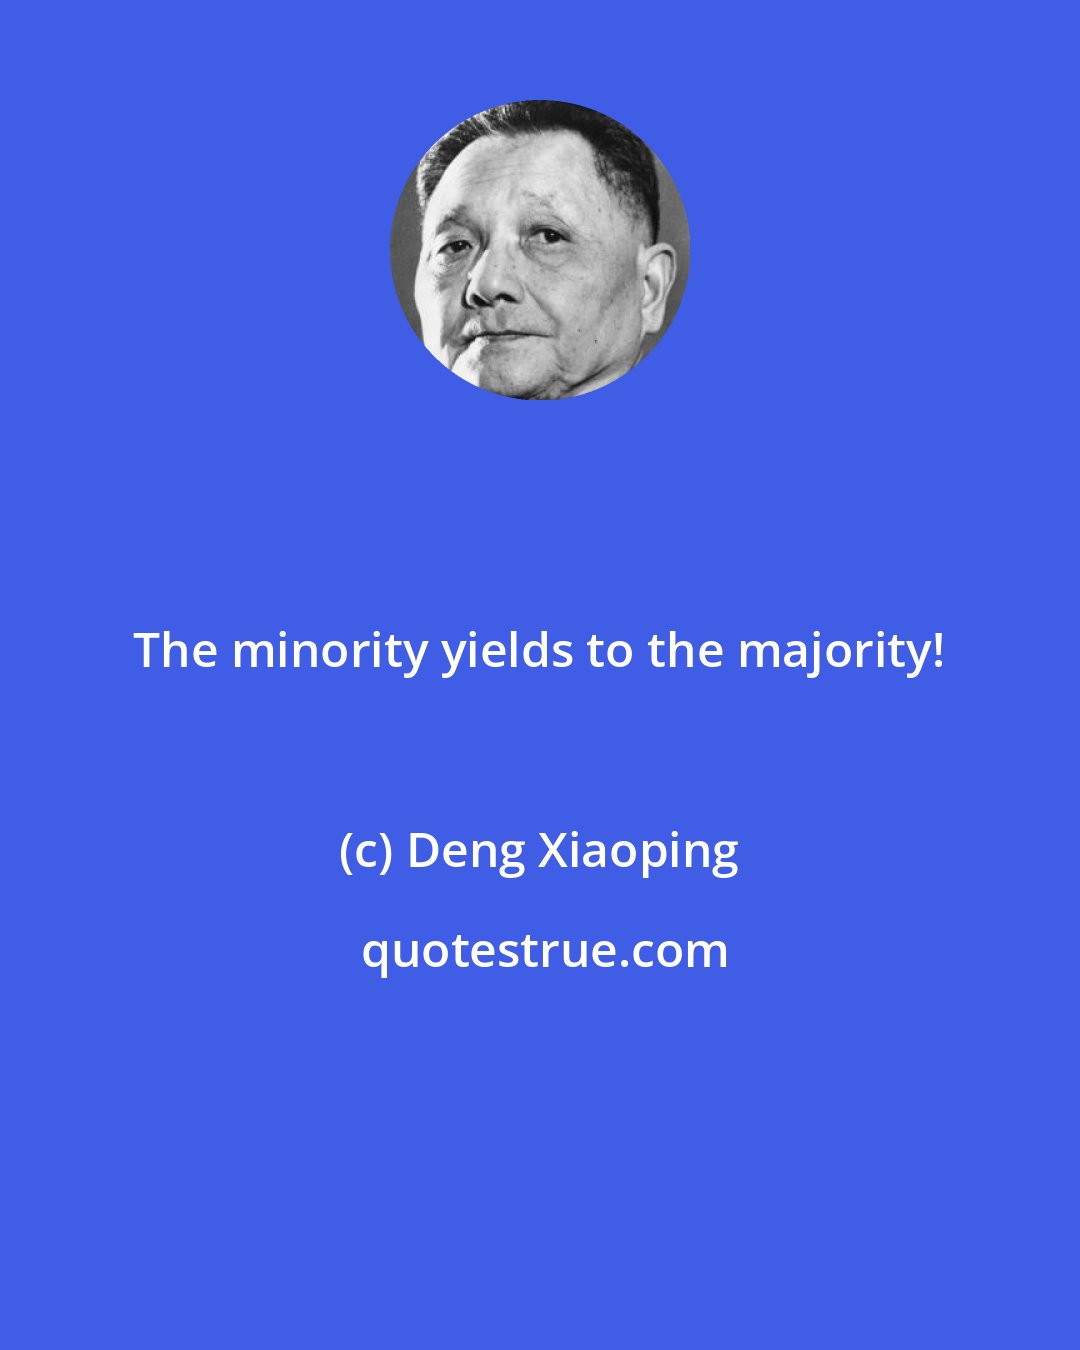 Deng Xiaoping: The minority yields to the majority!